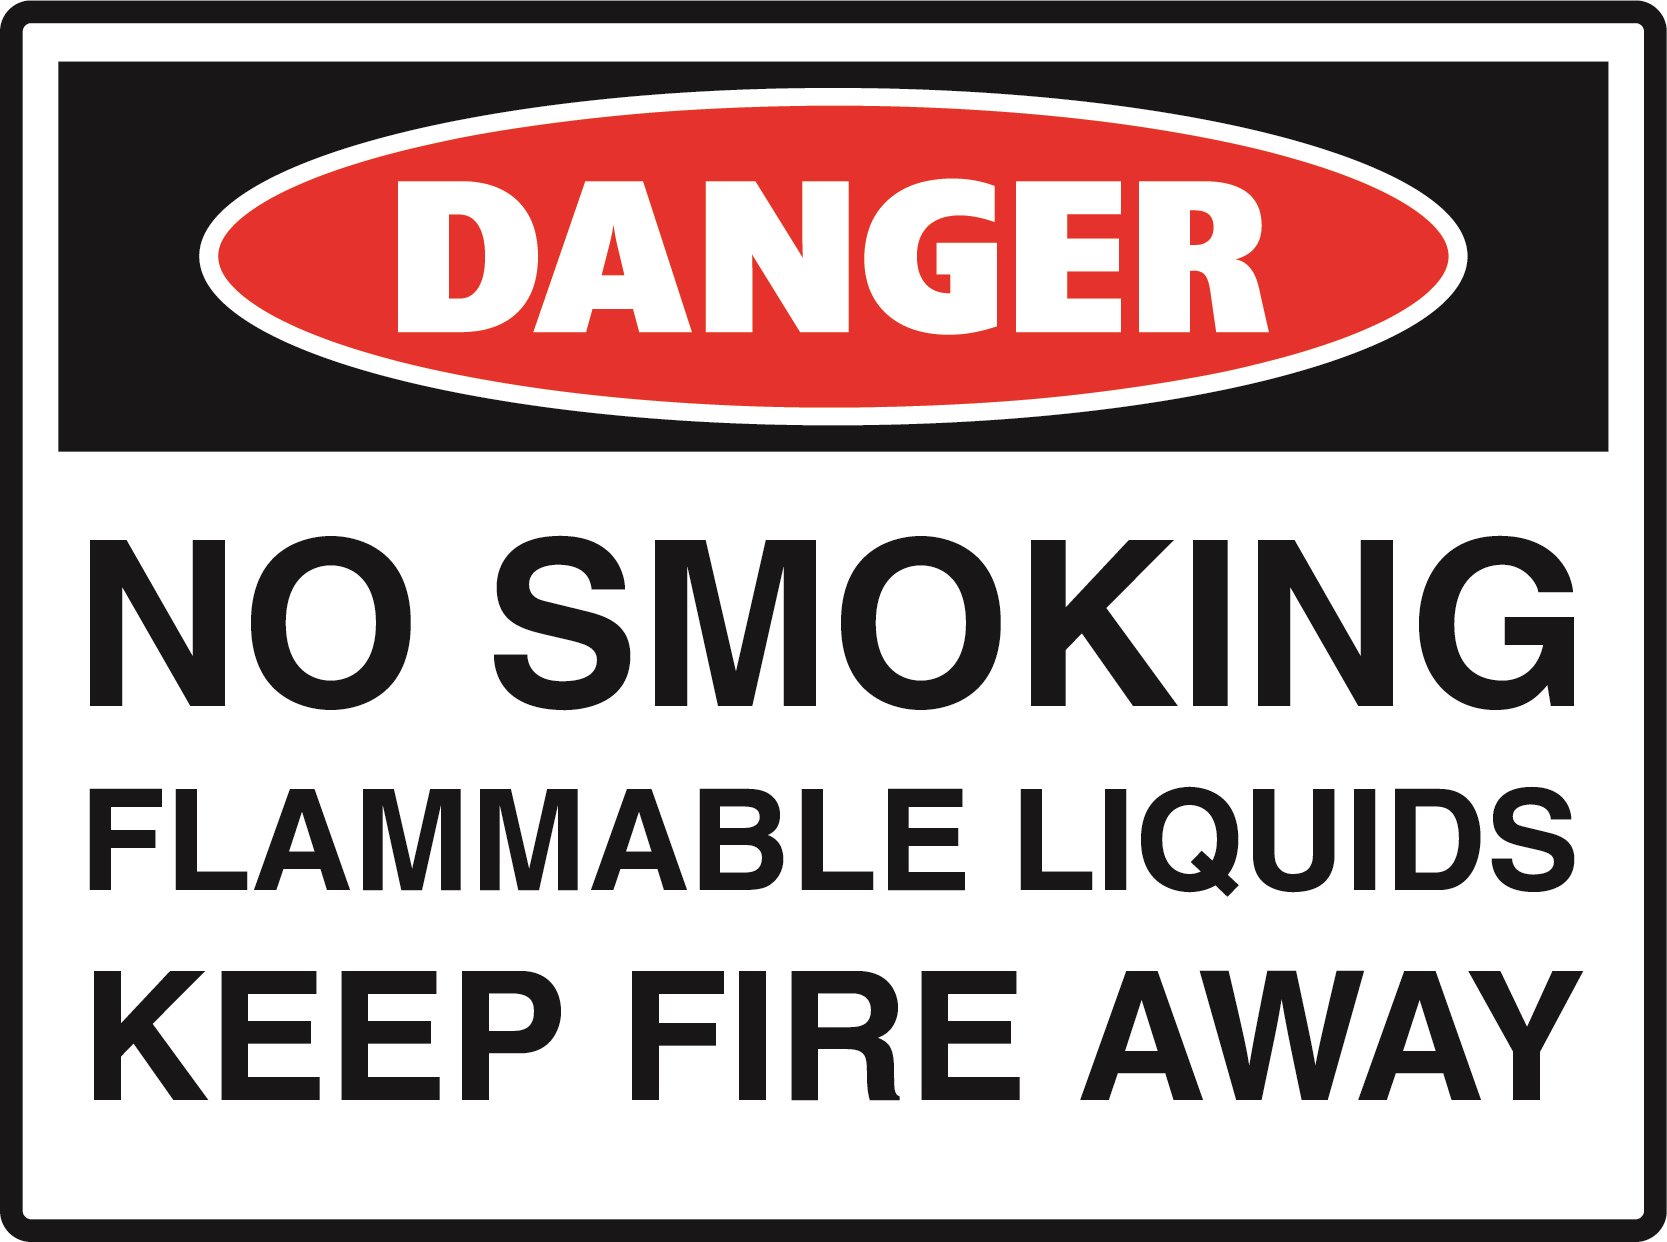 Danger - No Smoking Flammable Liquid Keep Fire Away